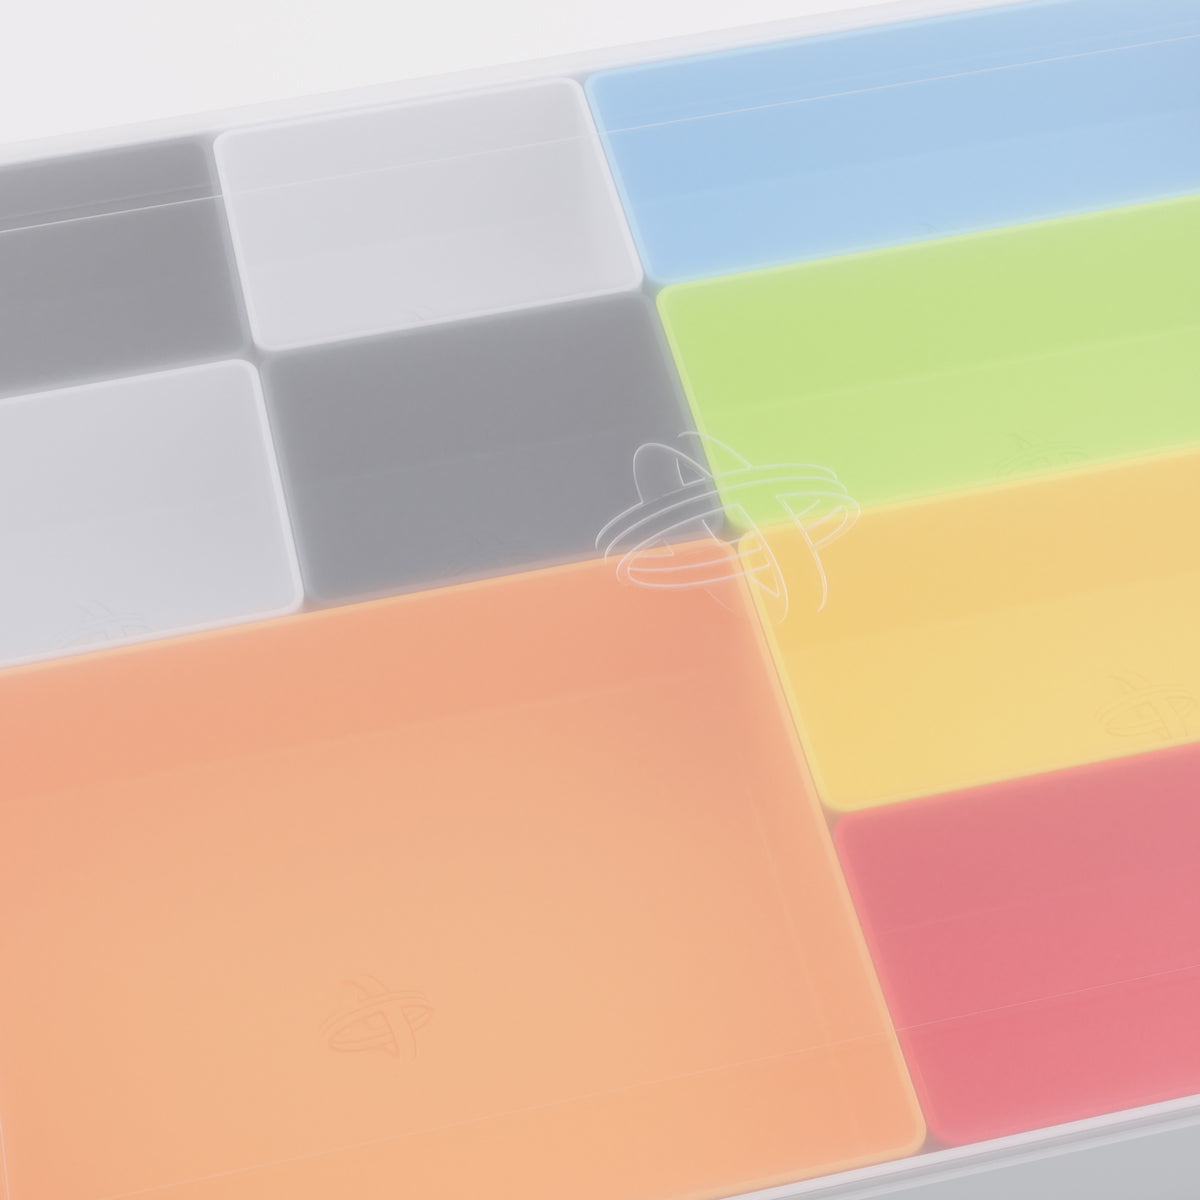 Gamegenic Token Silo Convertible Advanced Storage Box - White/Multicolour